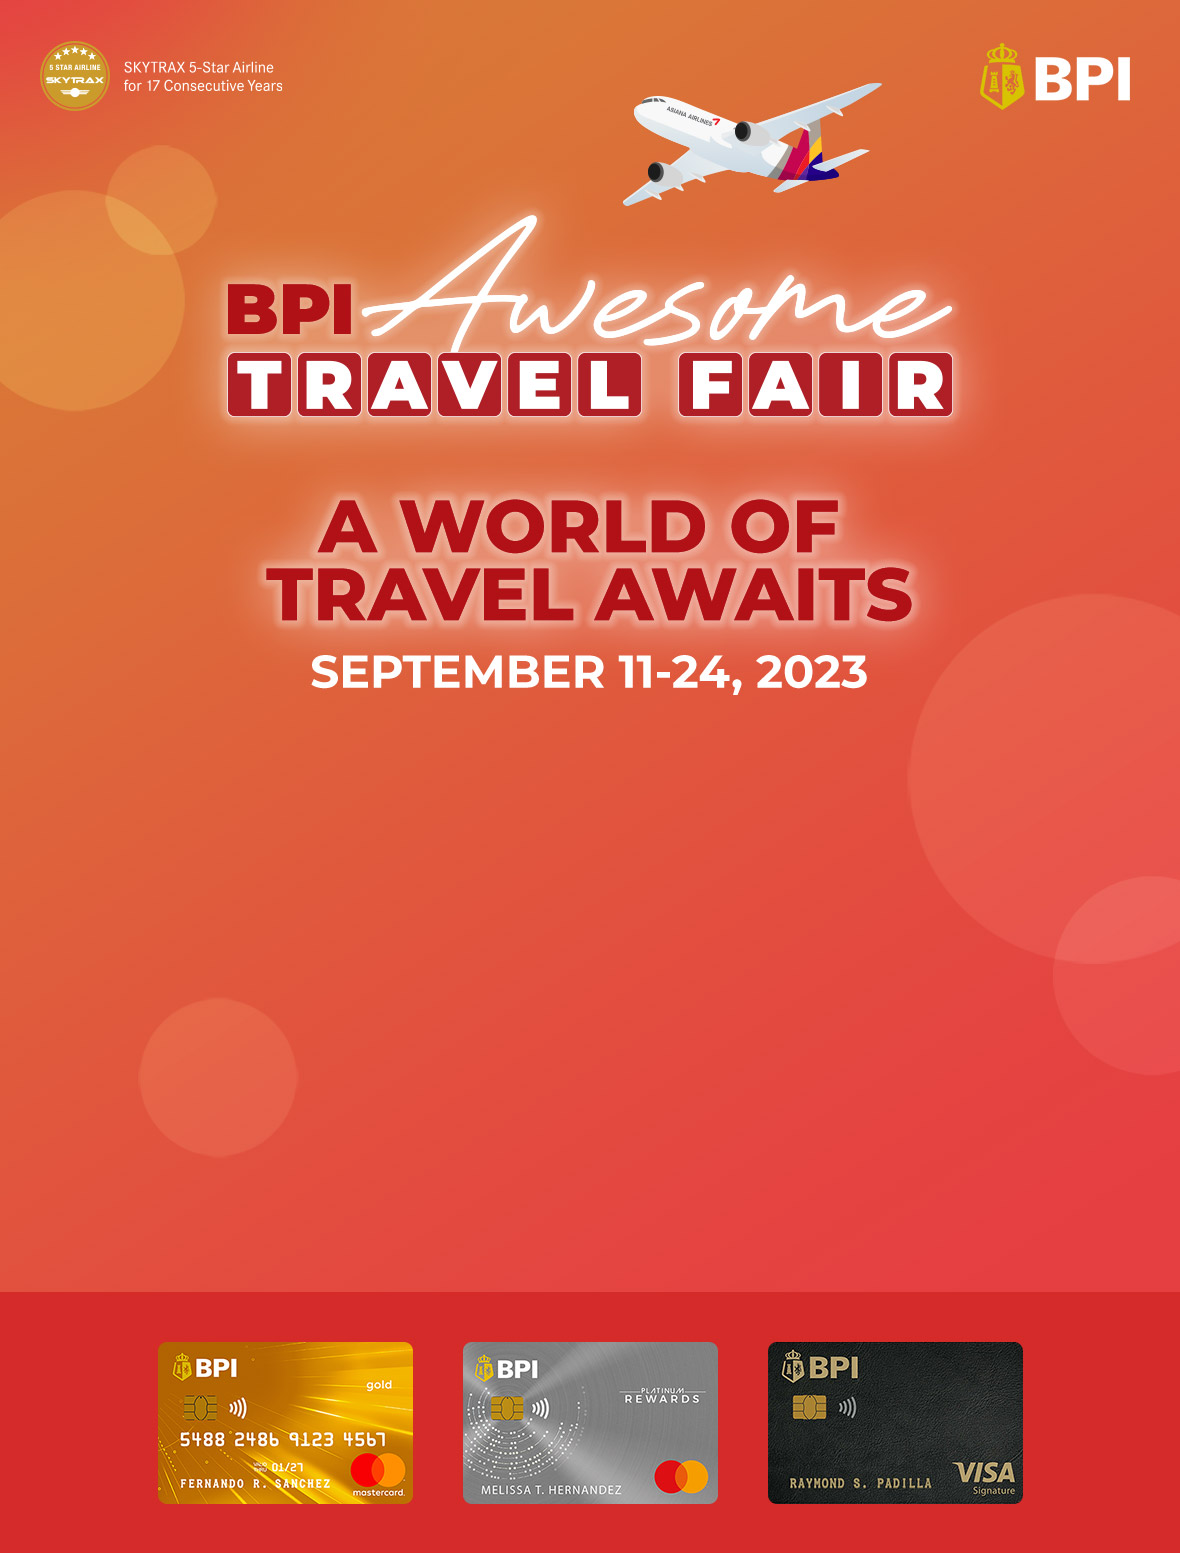 bpi travel fair promo